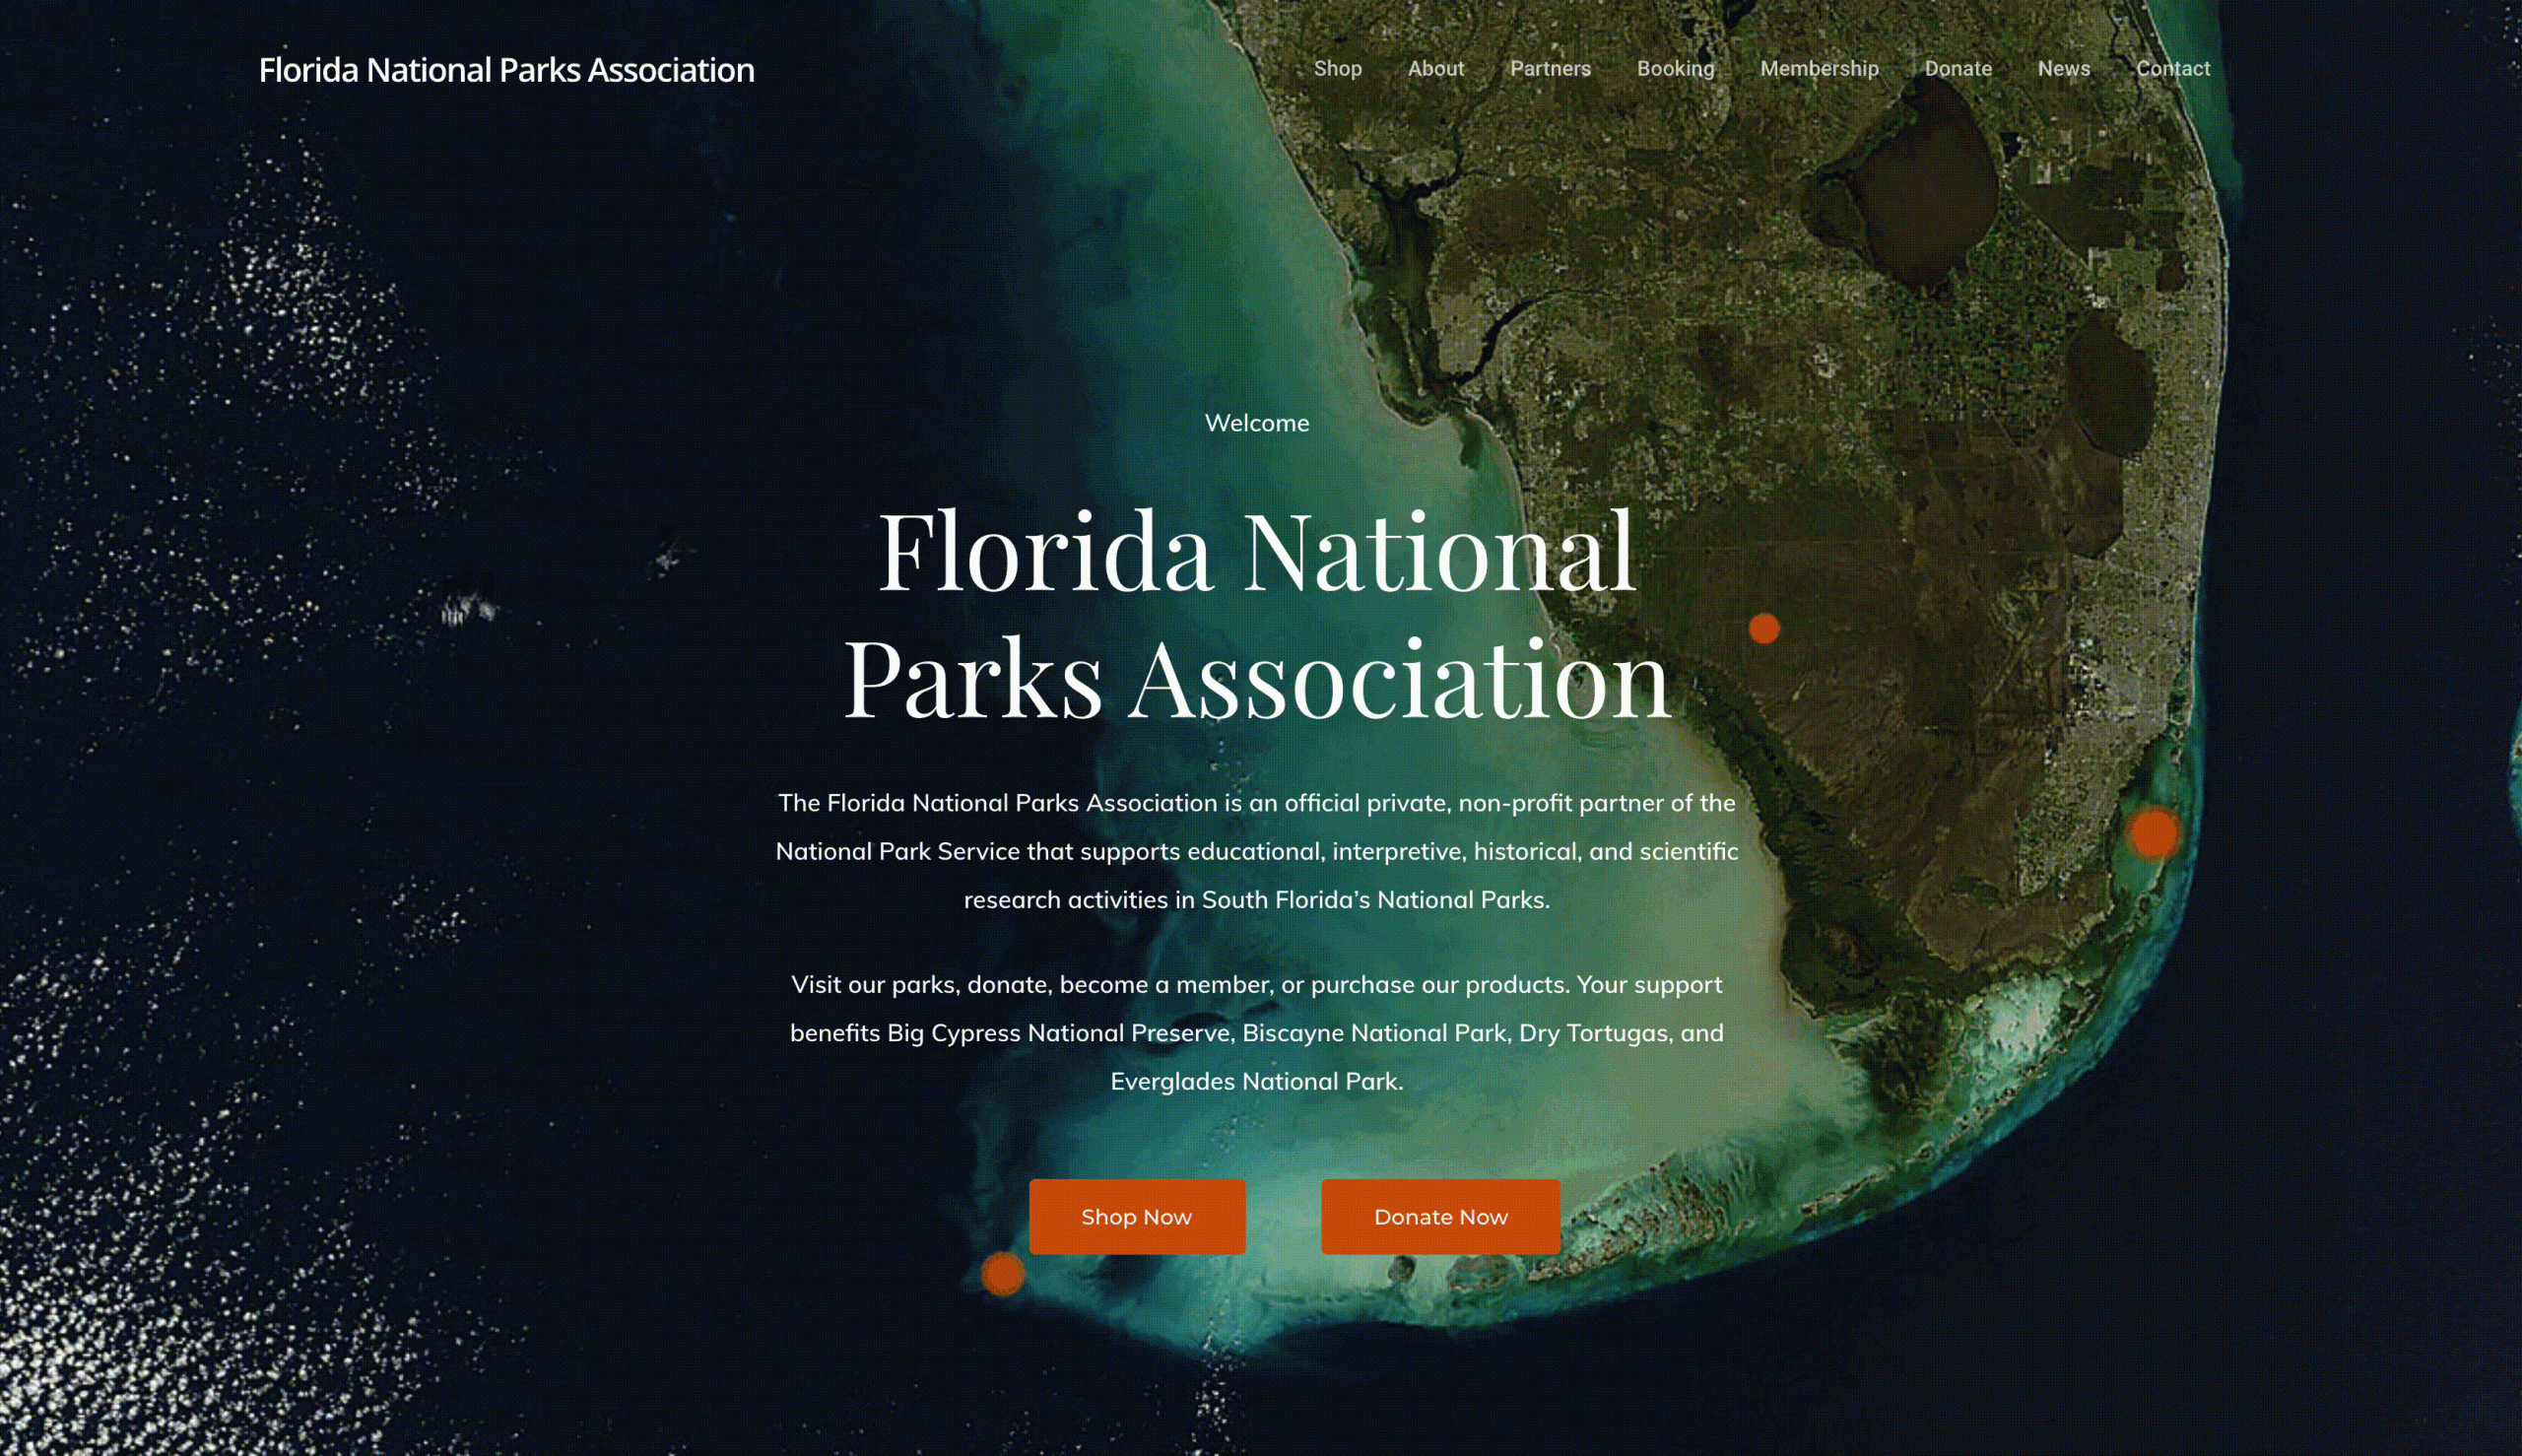 Website for the Florida National Parks Association